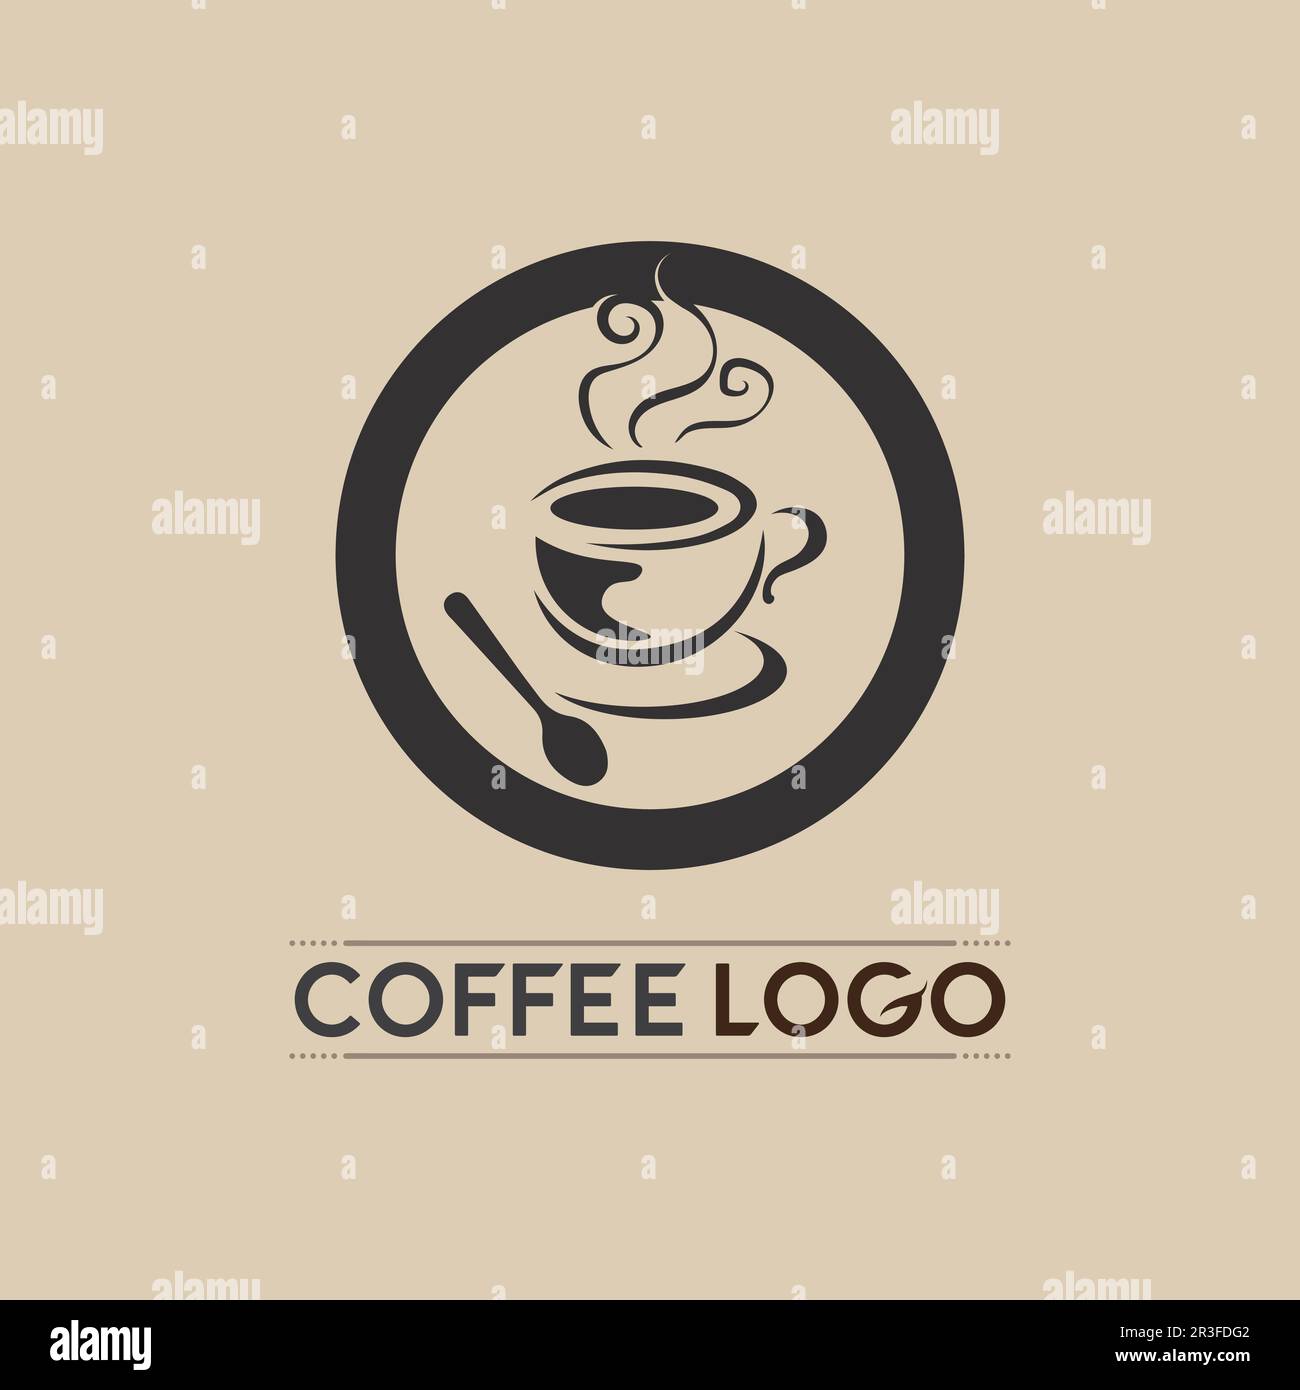 https://c8.alamy.com/compes/2r3fdg2/taza-de-cafe-logo-bebida-caliente-plantilla-vector-icono-diseno-ilustracion-2r3fdg2.jpg